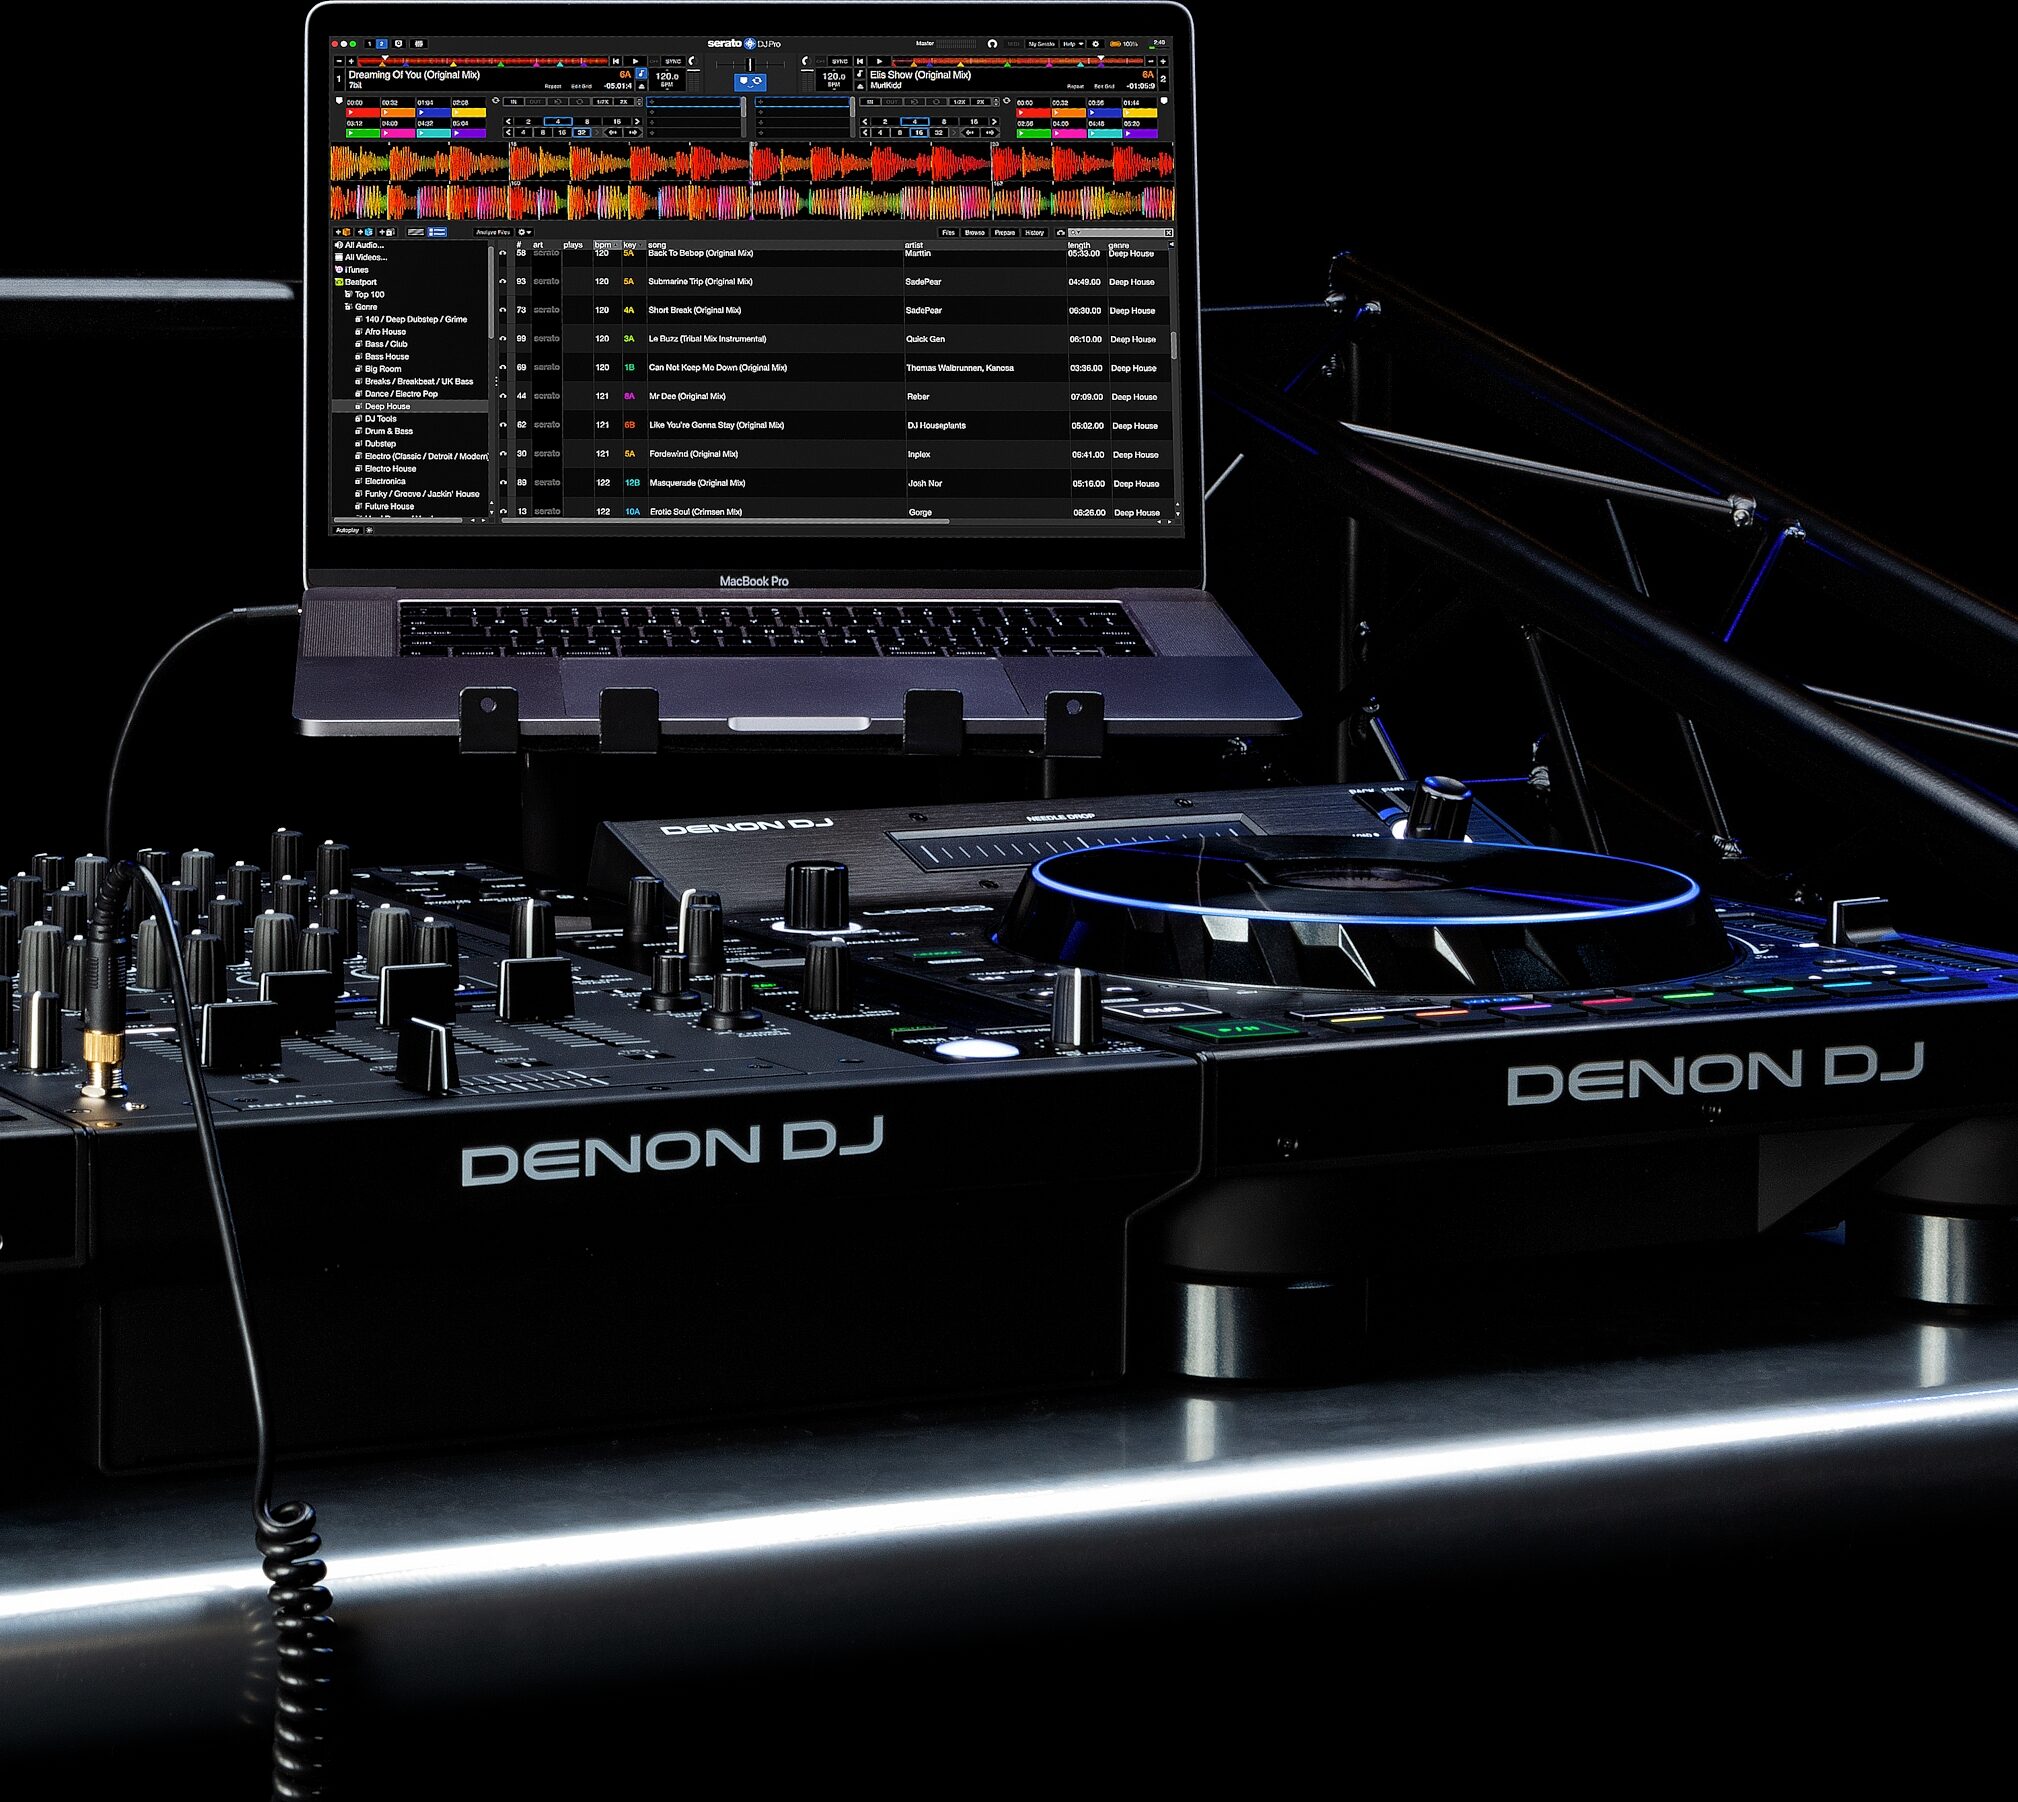 Denon DJ releases new controller, the LC6000 PRIME